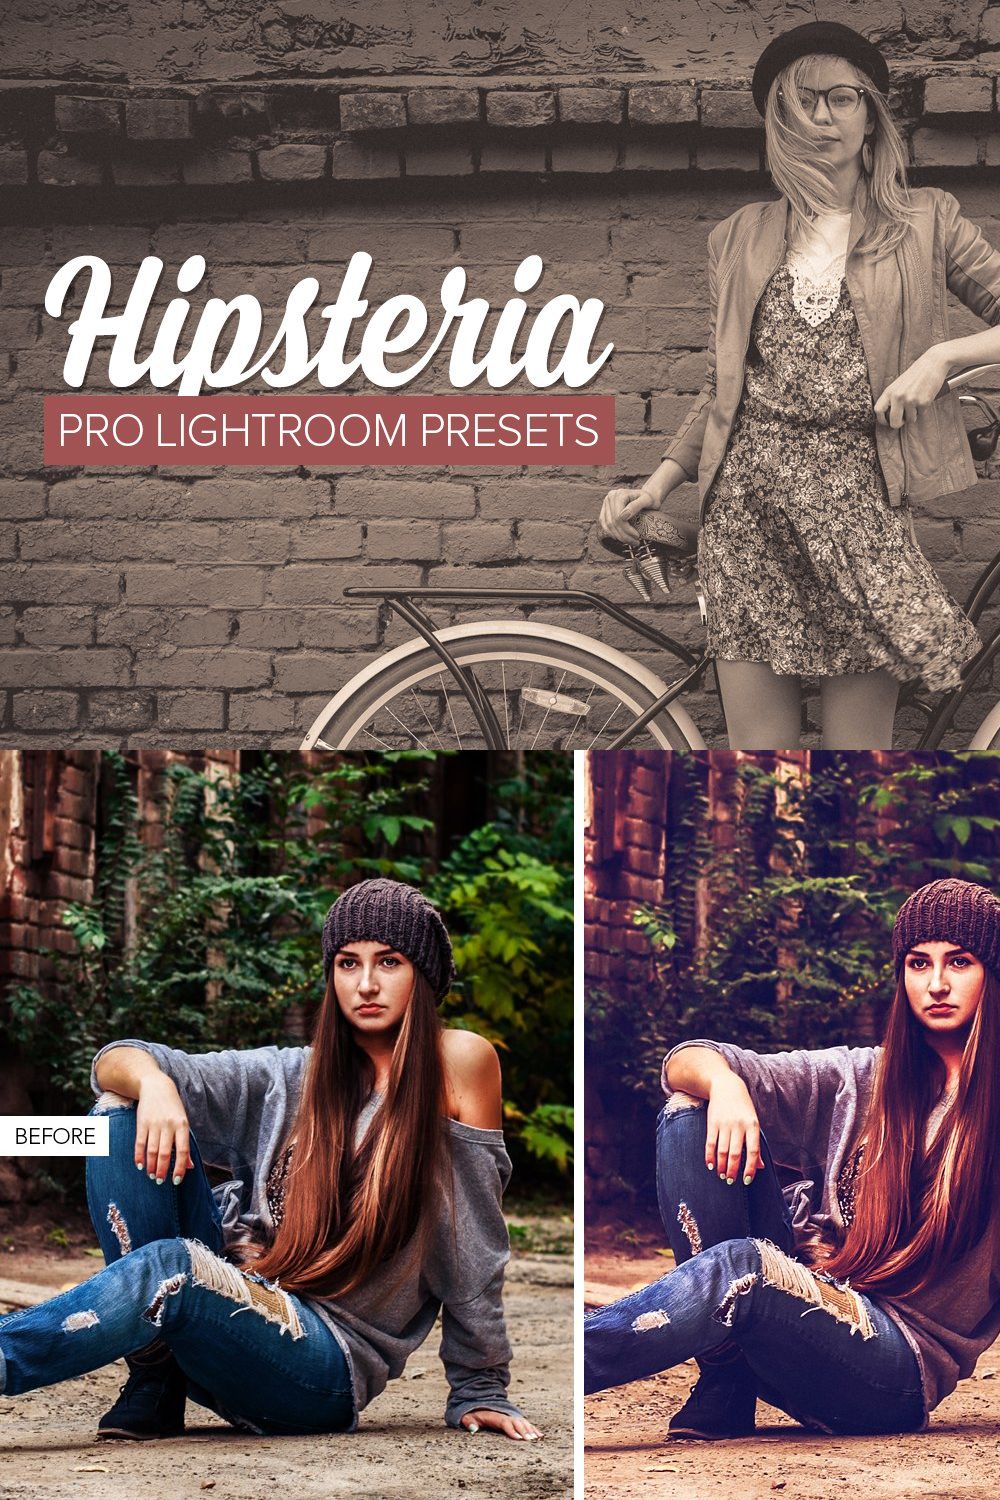 Hipster Lightroom Presets pinterest preview image.